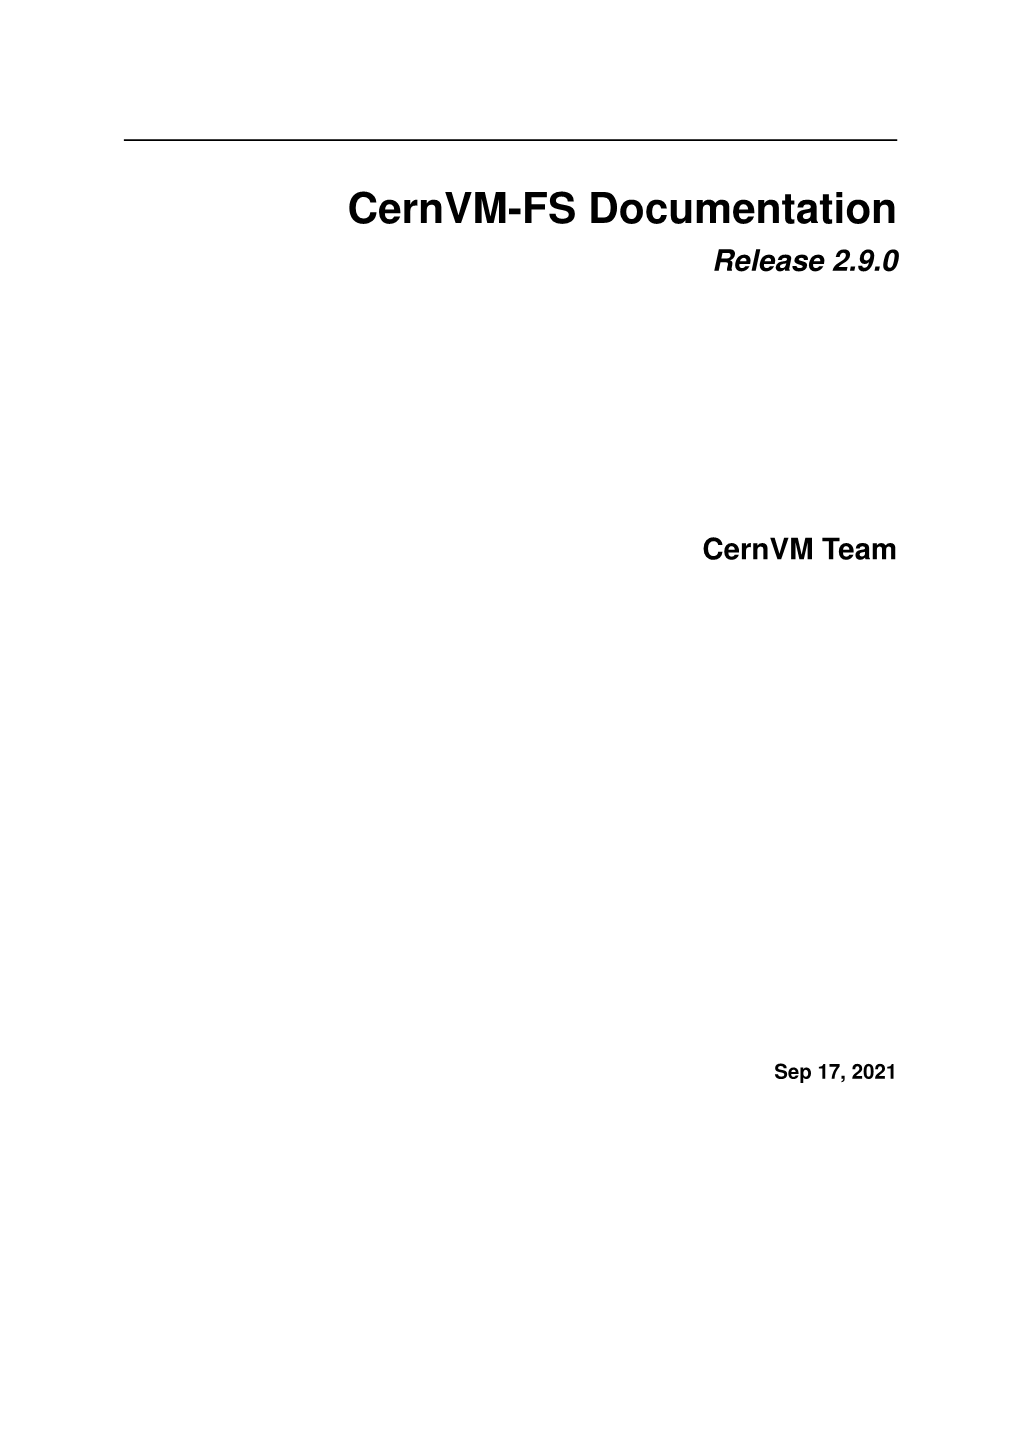 Cernvm-FS Documentation Release 2.9.0